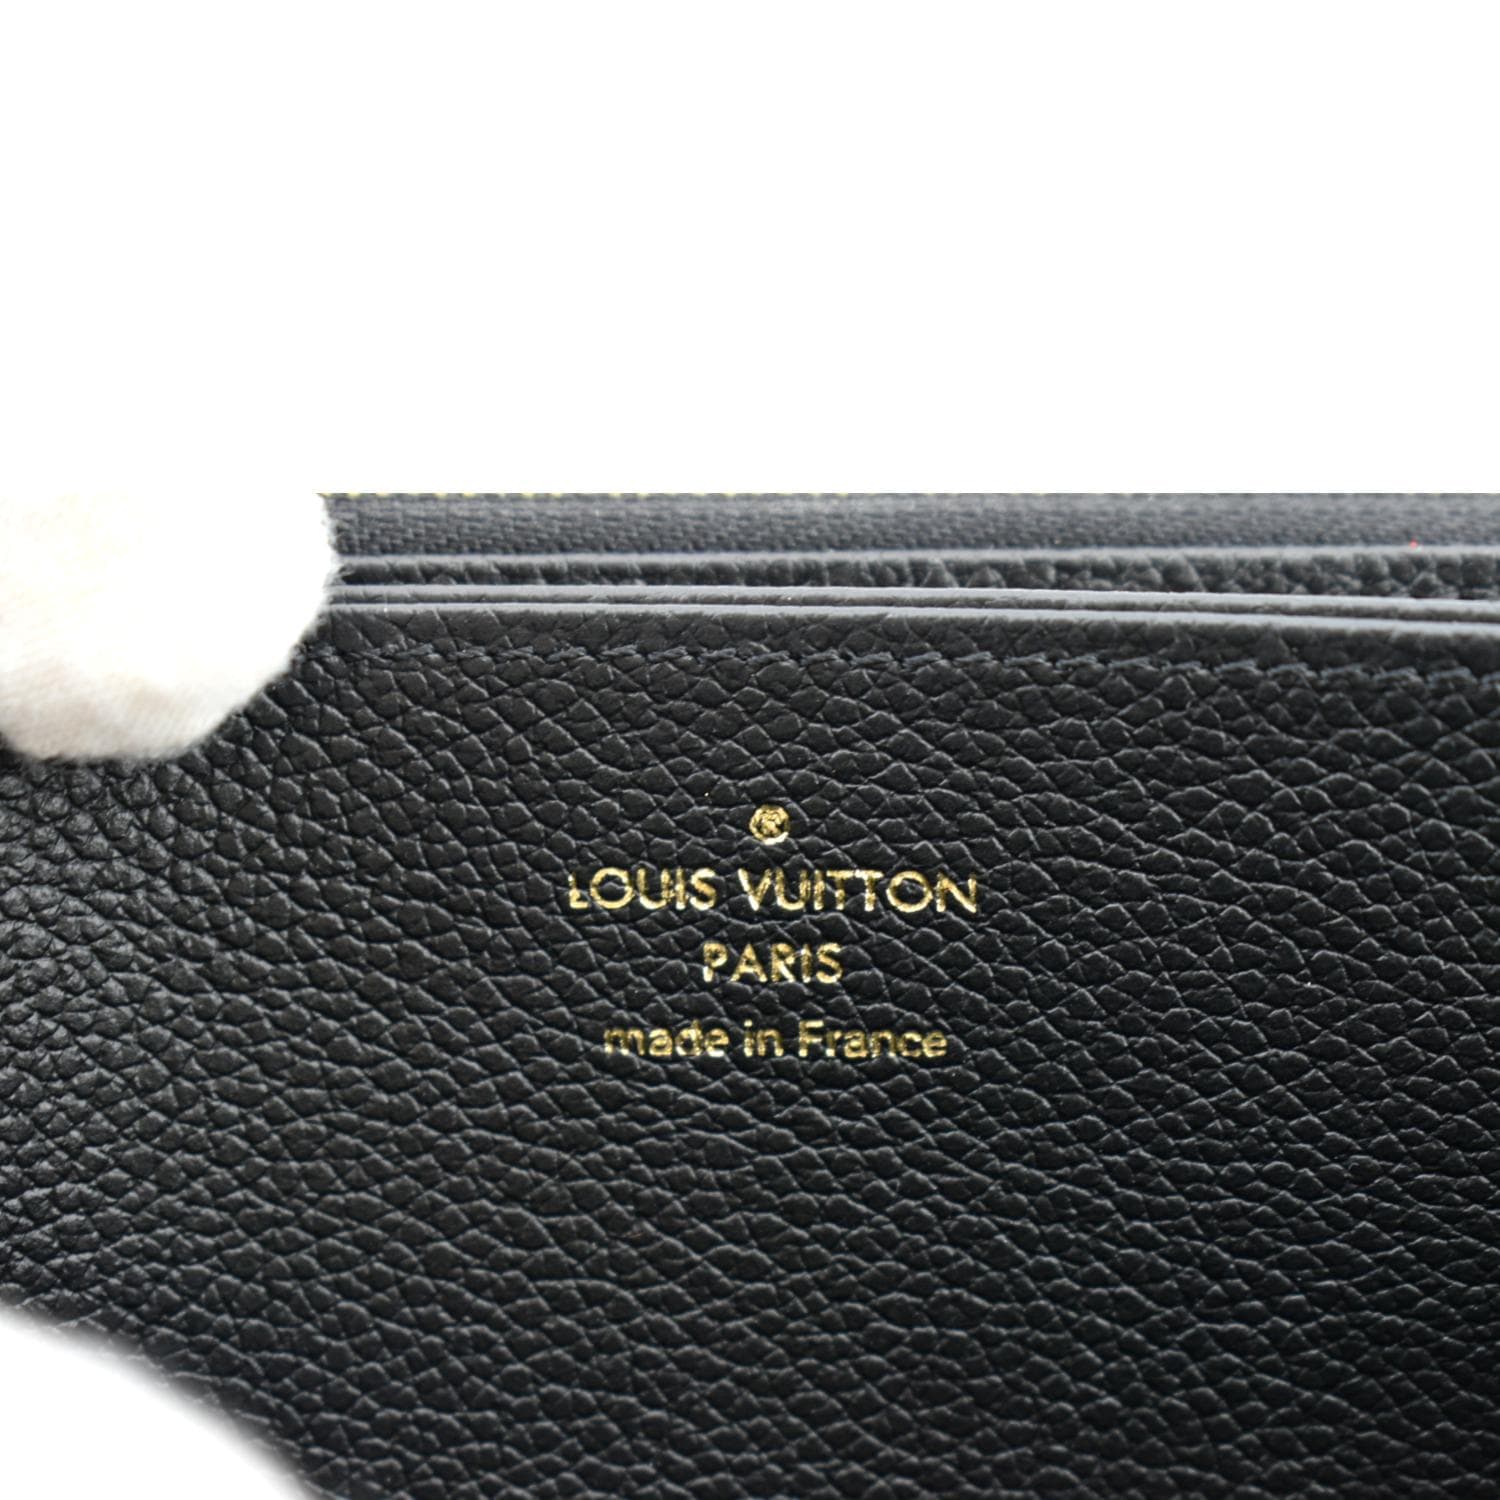 Authentic Louis Vuitton Monogram Empriente Wallet Purse Date Code Ca3112